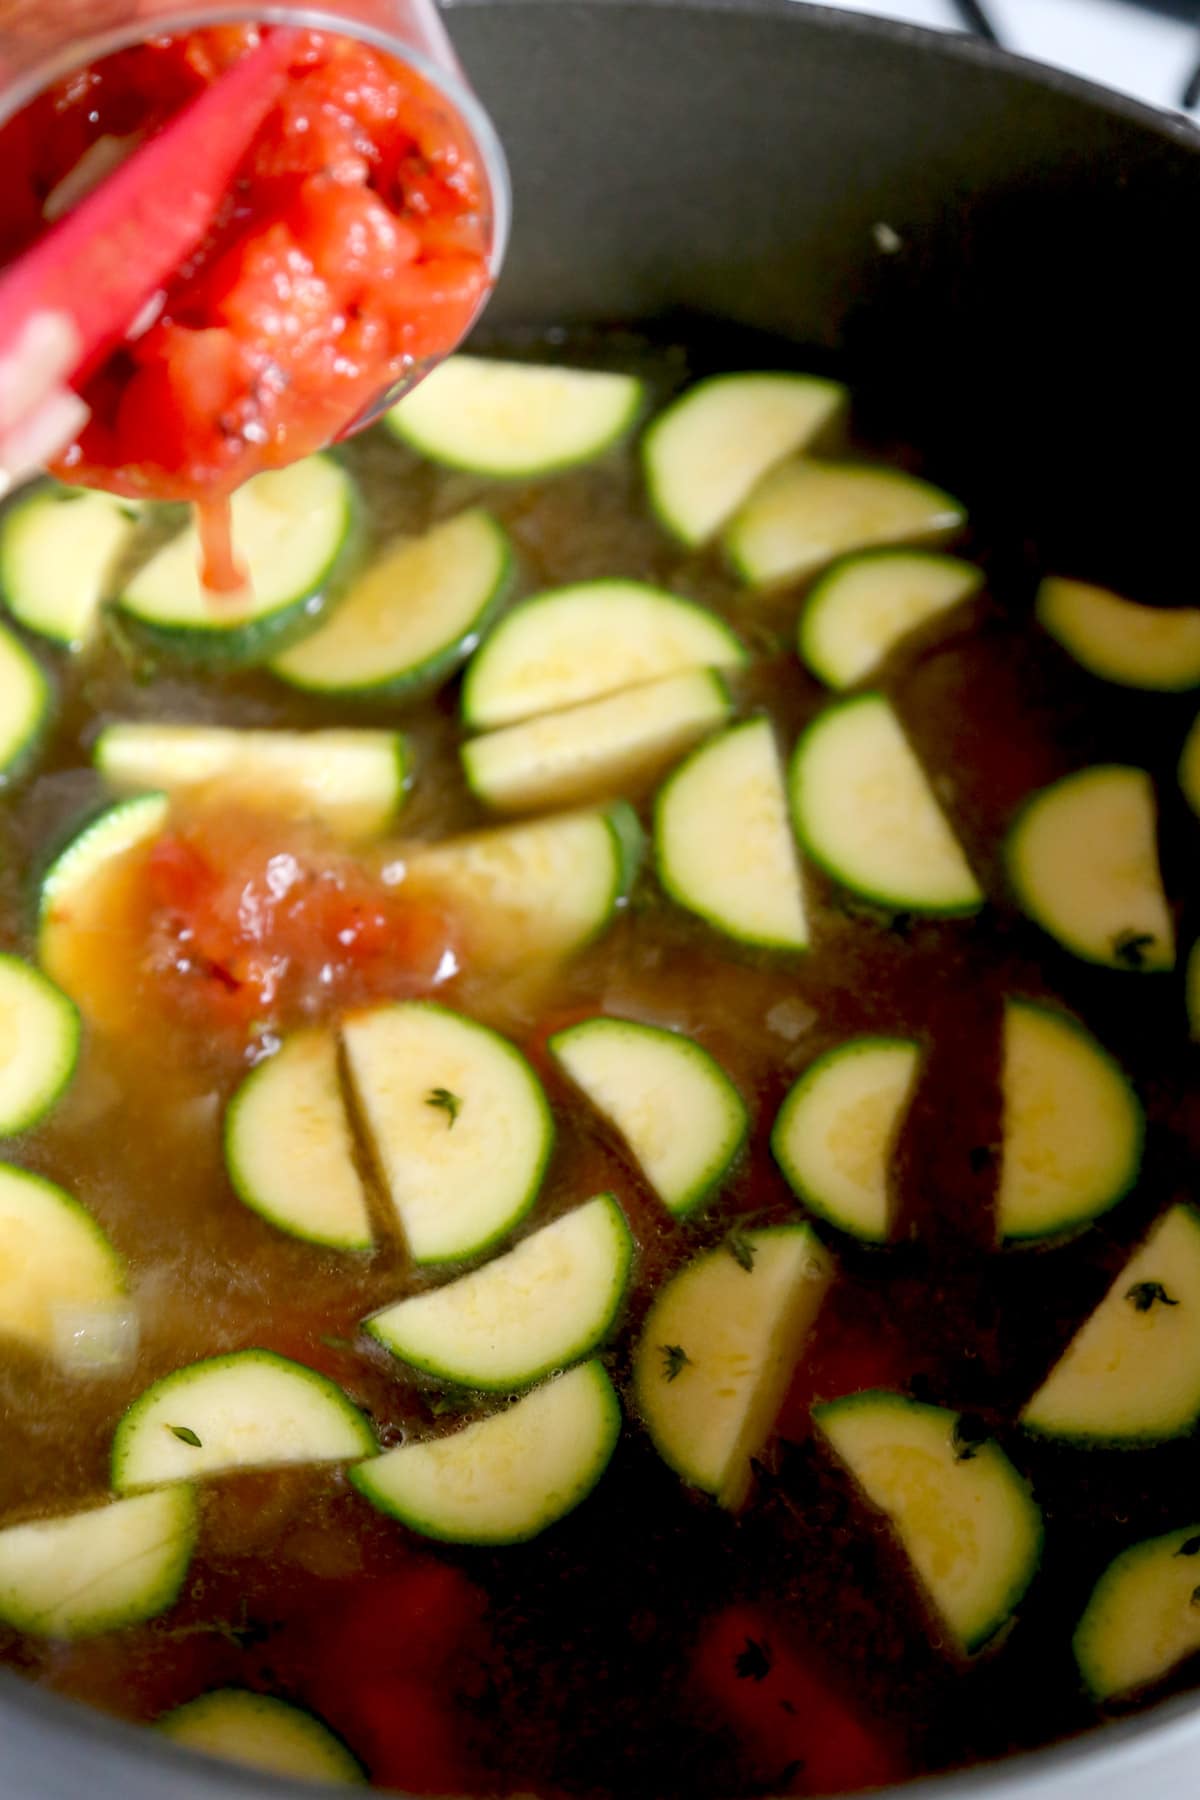 zucchini in soup